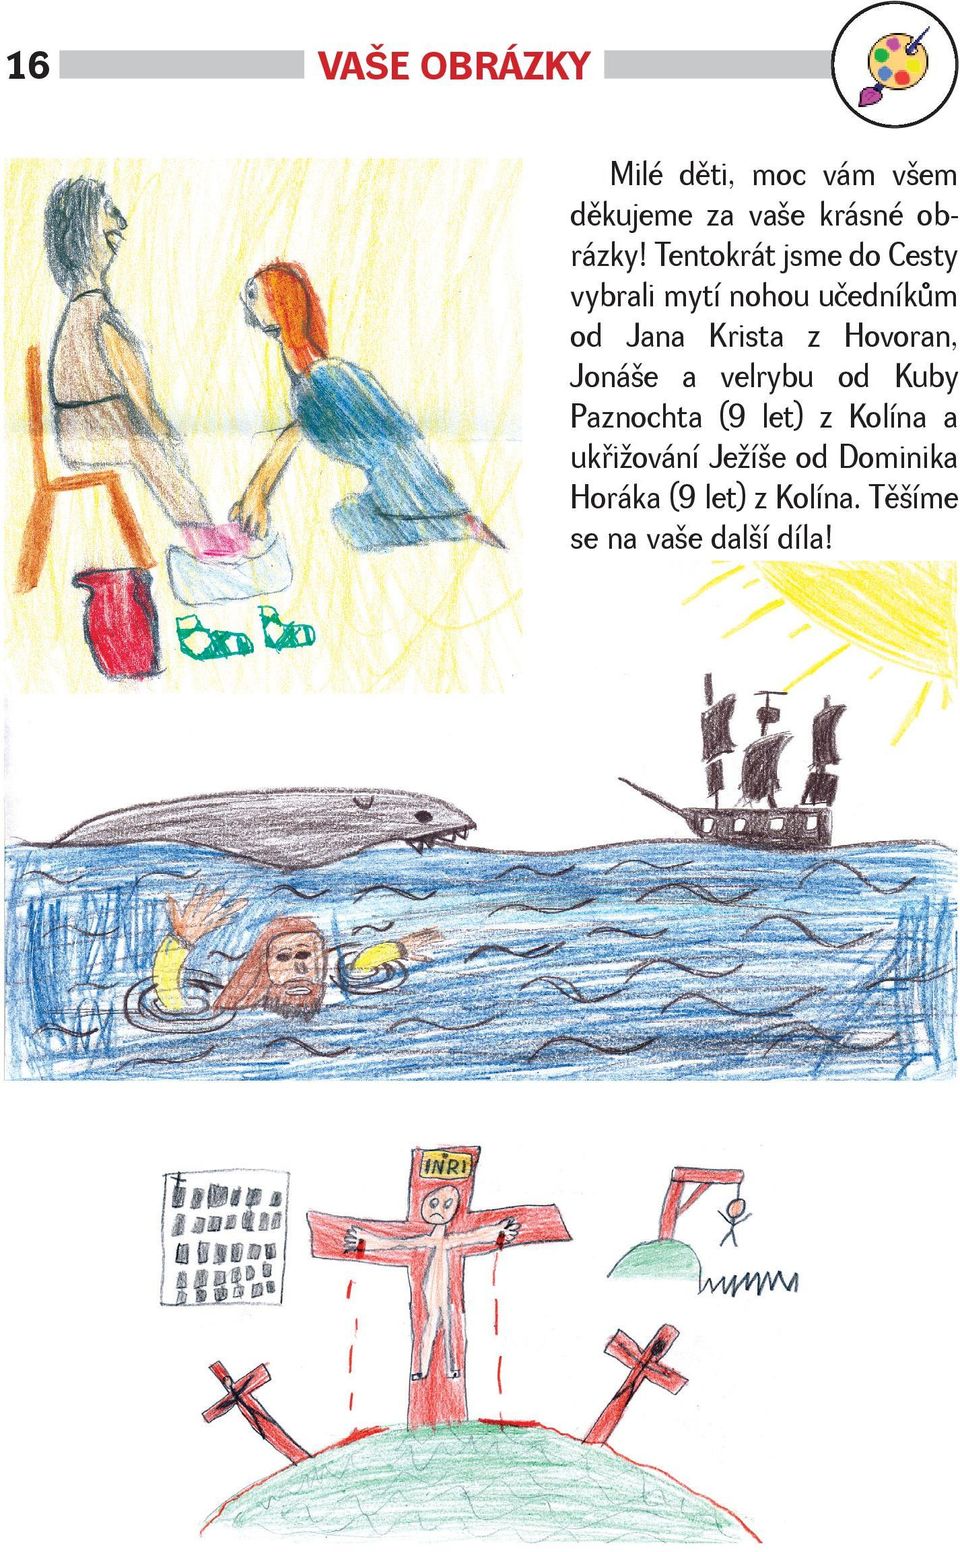 Hovoran, Joná e a velrybu od Kuby Paznochta (9 let) z Kolína a ukøi